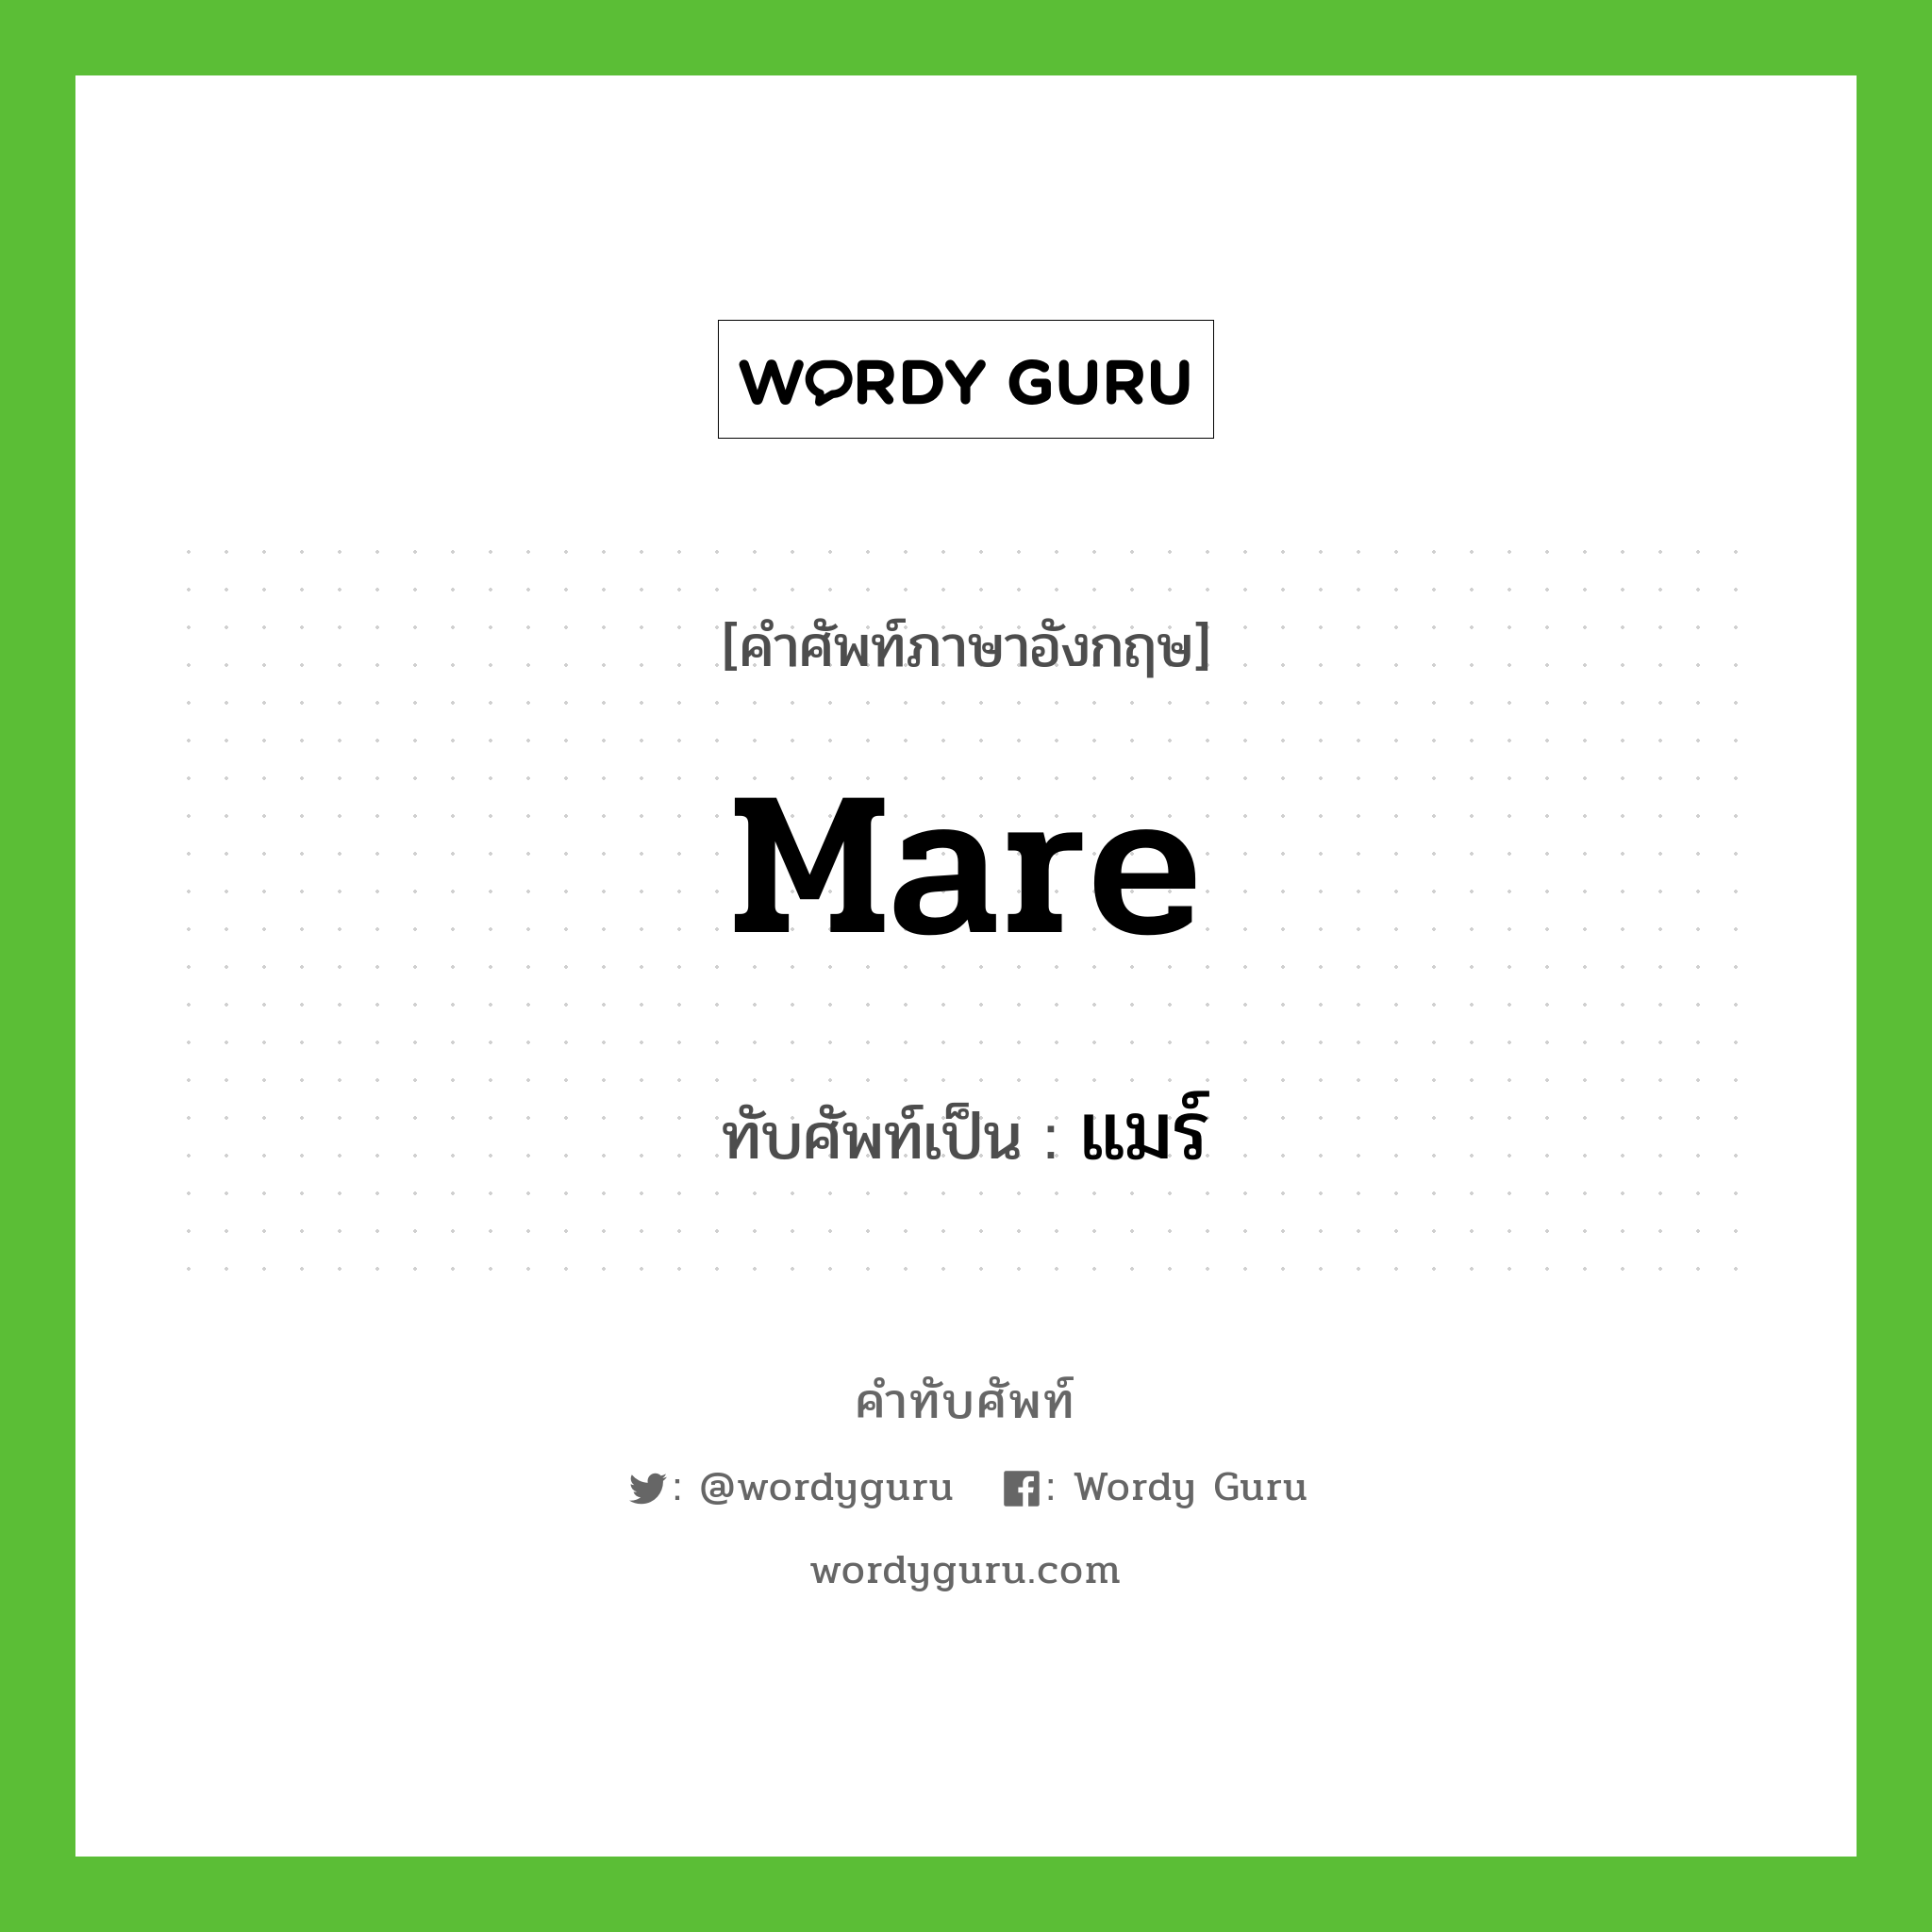 mare เขียนเป็นคำไทยว่าอะไร?, คำศัพท์ภาษาอังกฤษ mare ทับศัพท์เป็น แมร์